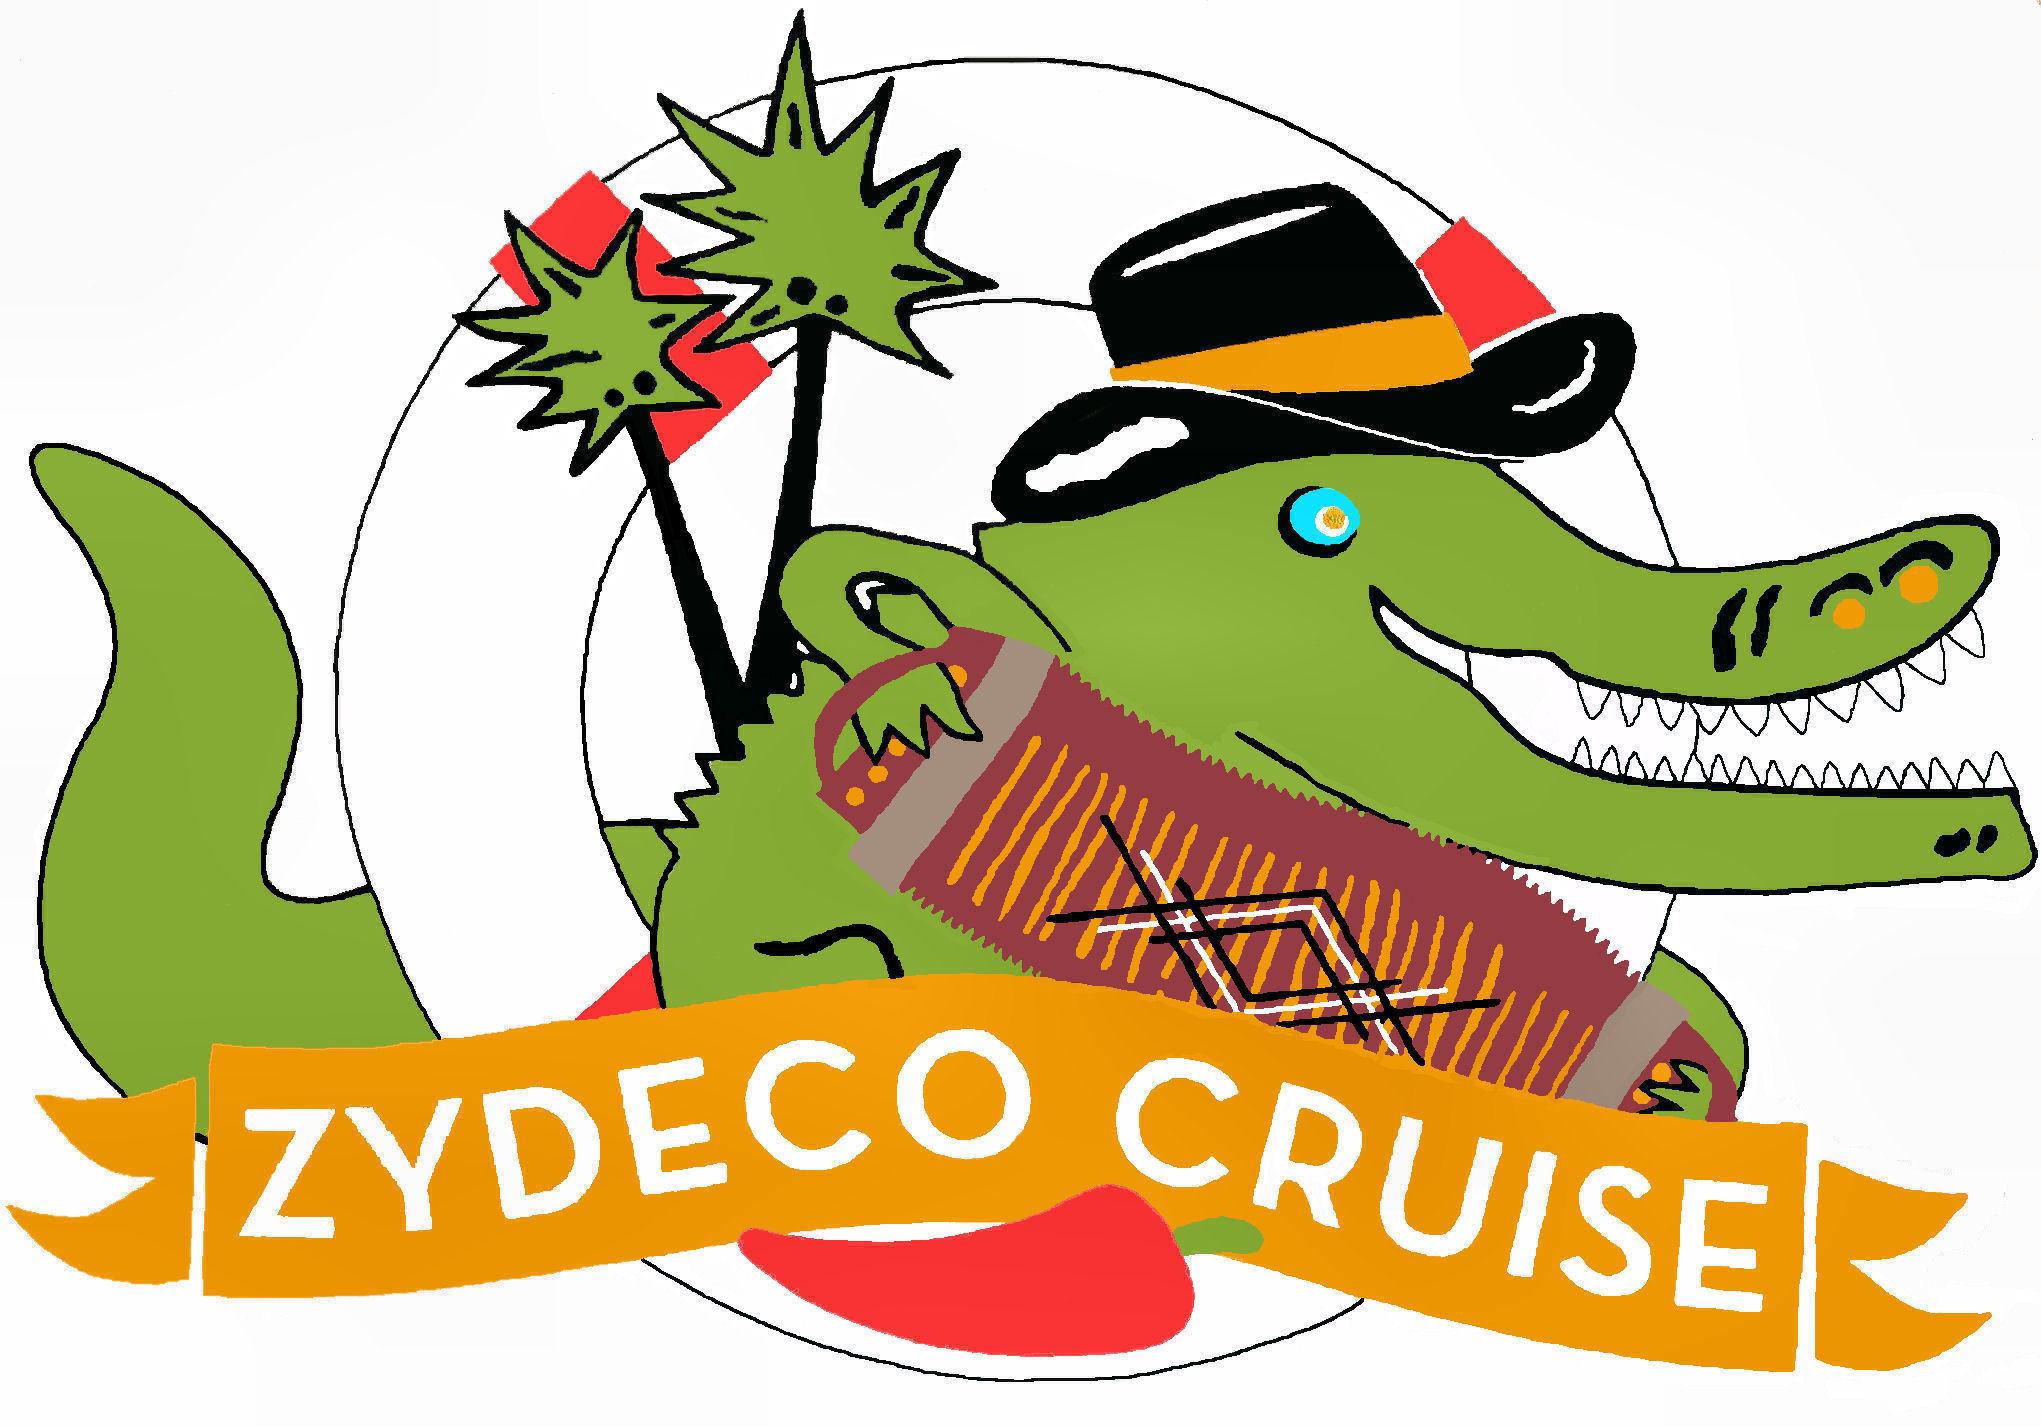 Zydeco cruise til julefrokosten Bøllingsø Bryghus